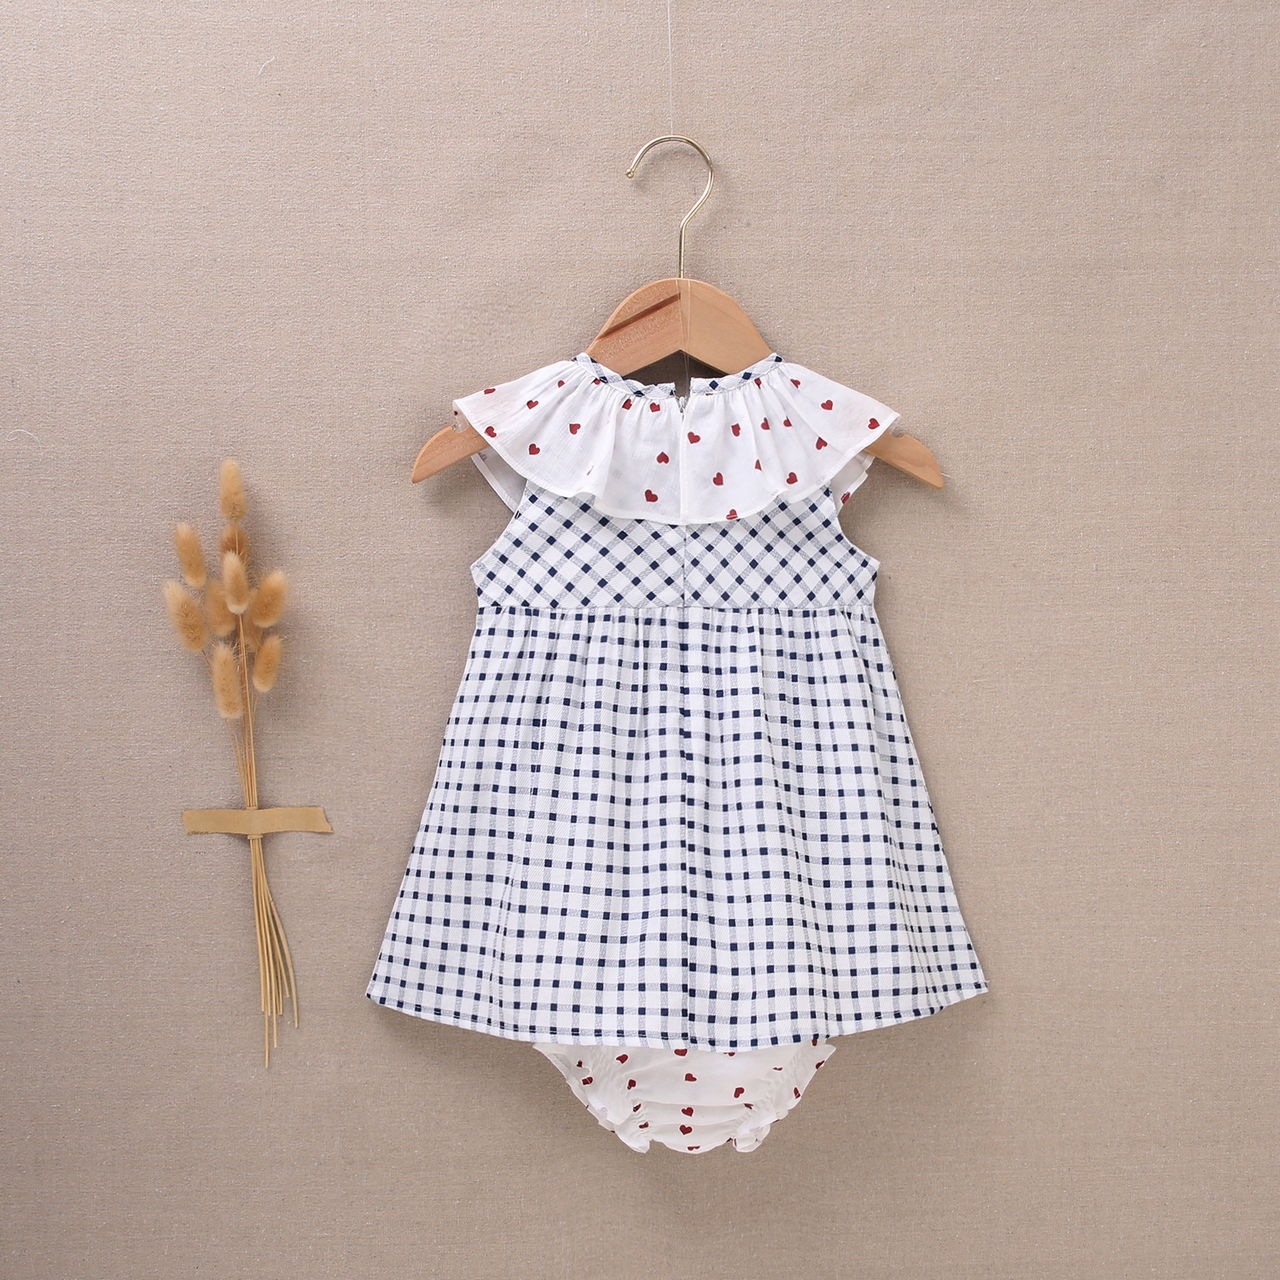 Imagen de Vestido de bebé niña con cubrepañal de cuadros blancos y azul marino con volantes con corazones